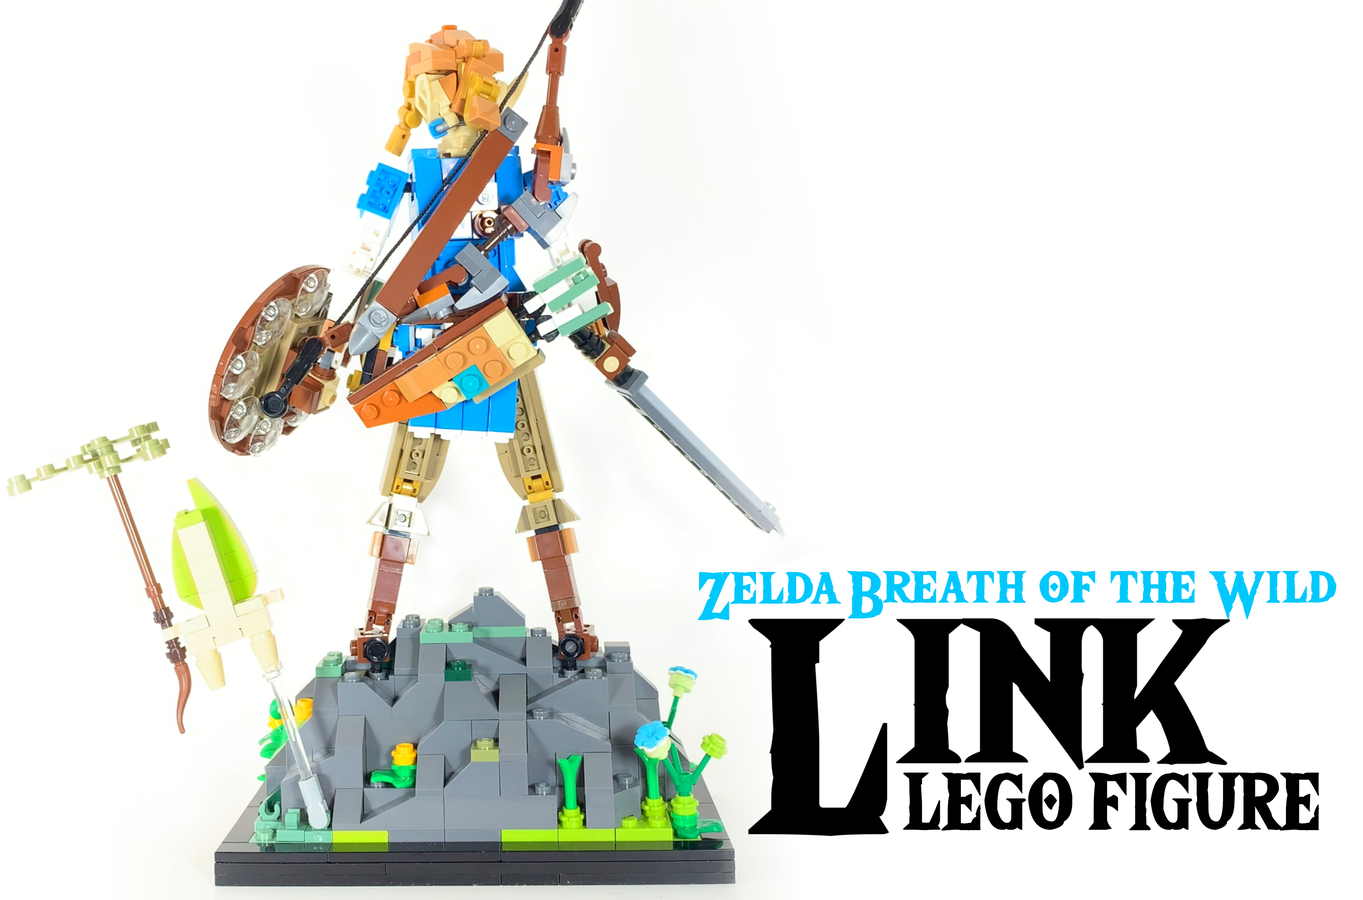 LEGO IDEAS - The Legend of Zelda: BOTW